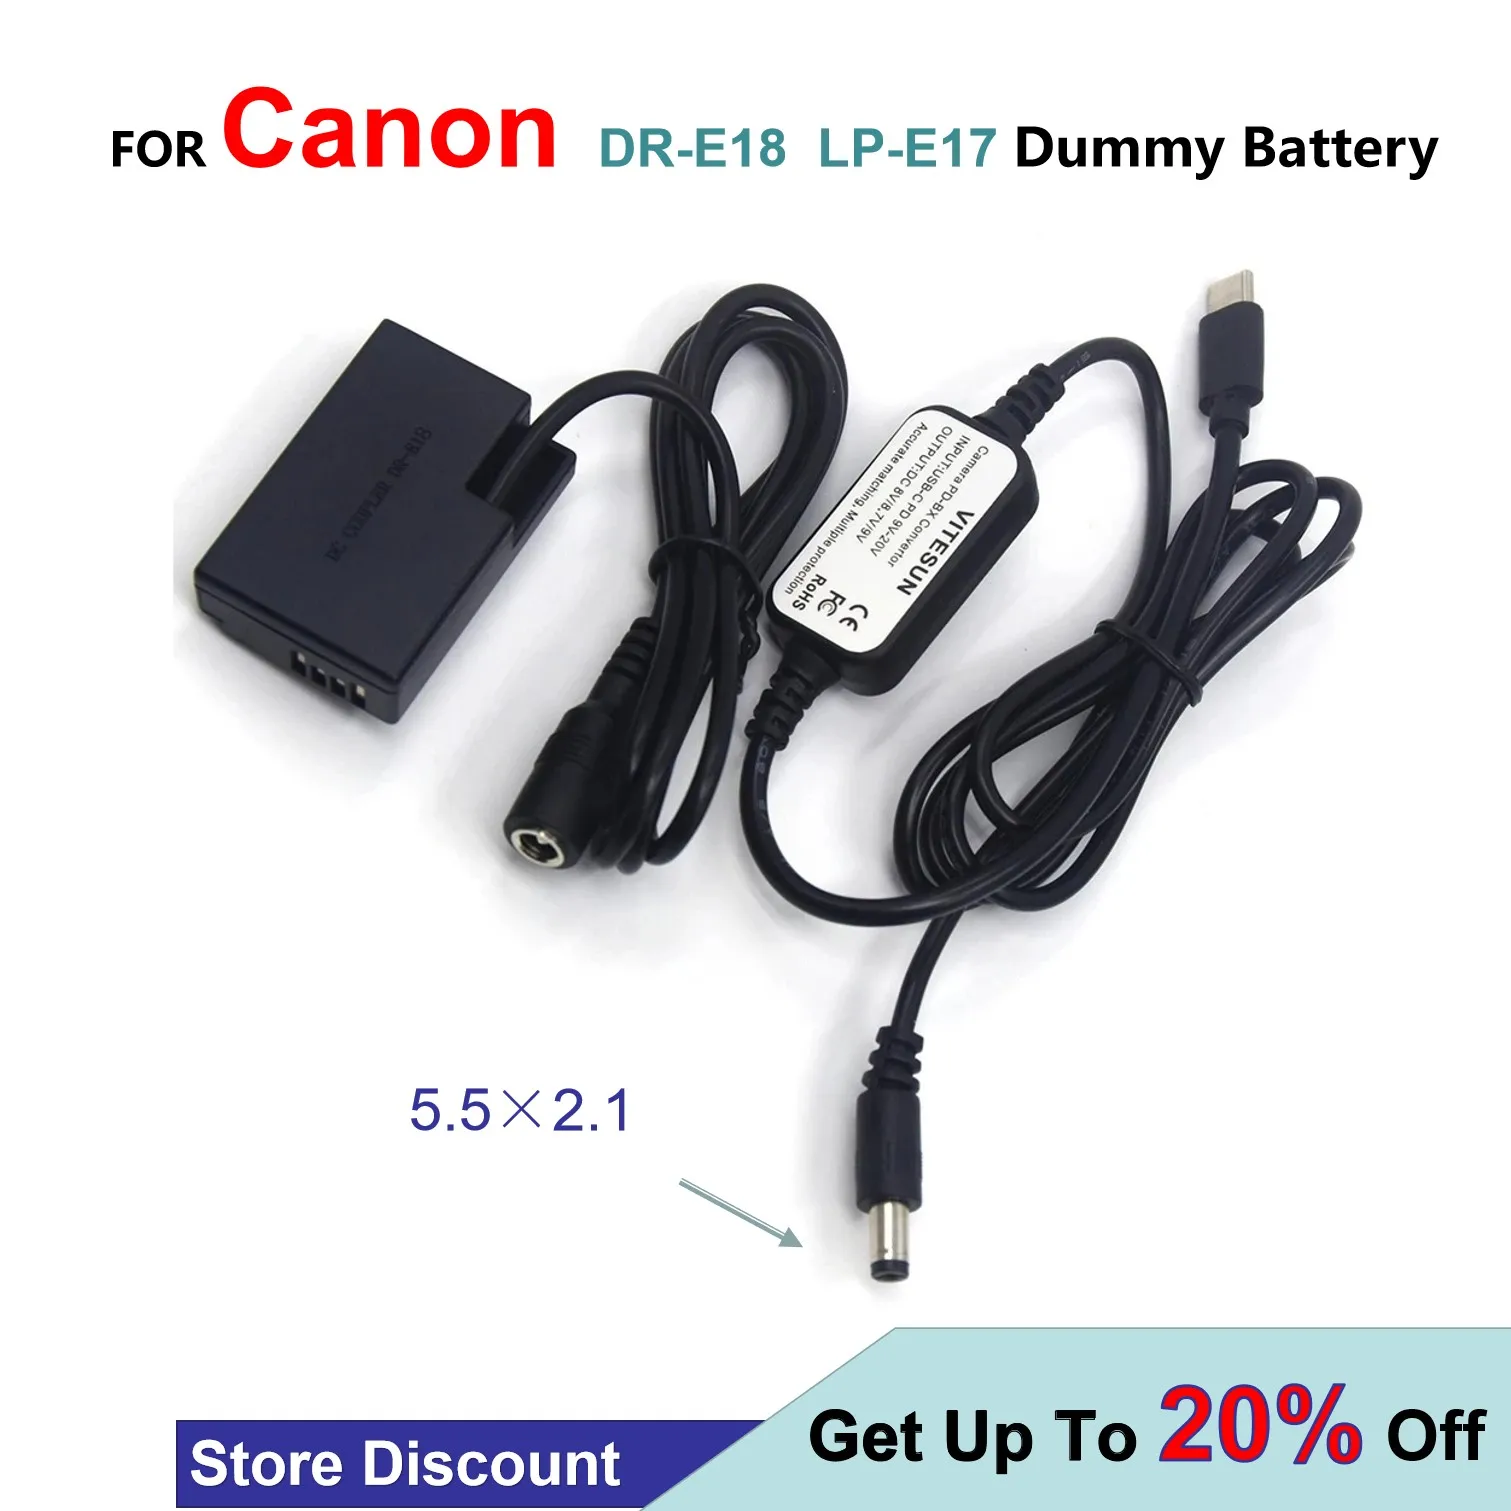 

USB Type C USB-PD Converter To DC Cable LP-E17 DR-E18 Dummy Battery For Canon EOS 750D Kiss X8i T6i 760D T6S 77D 800D 200D